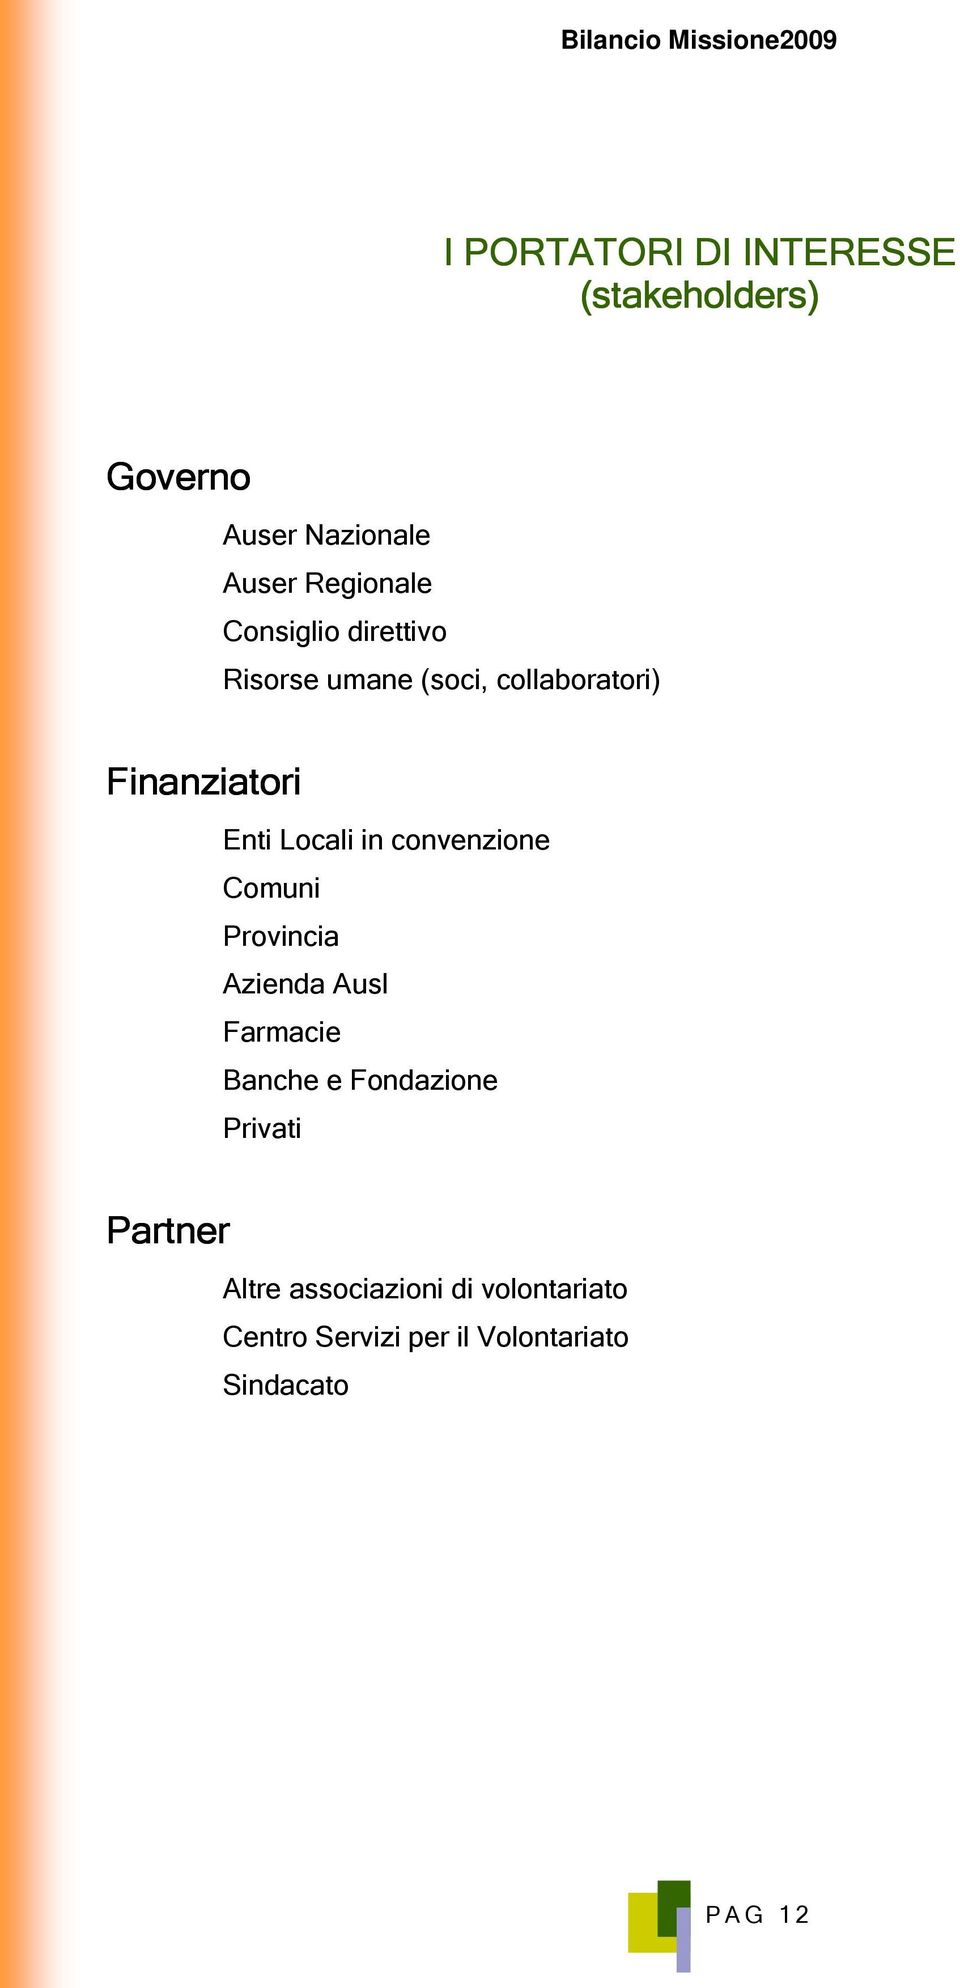 Locali in convenzione Comuni Provincia Azienda Ausl Farmacie Banche e Fondazione Privati